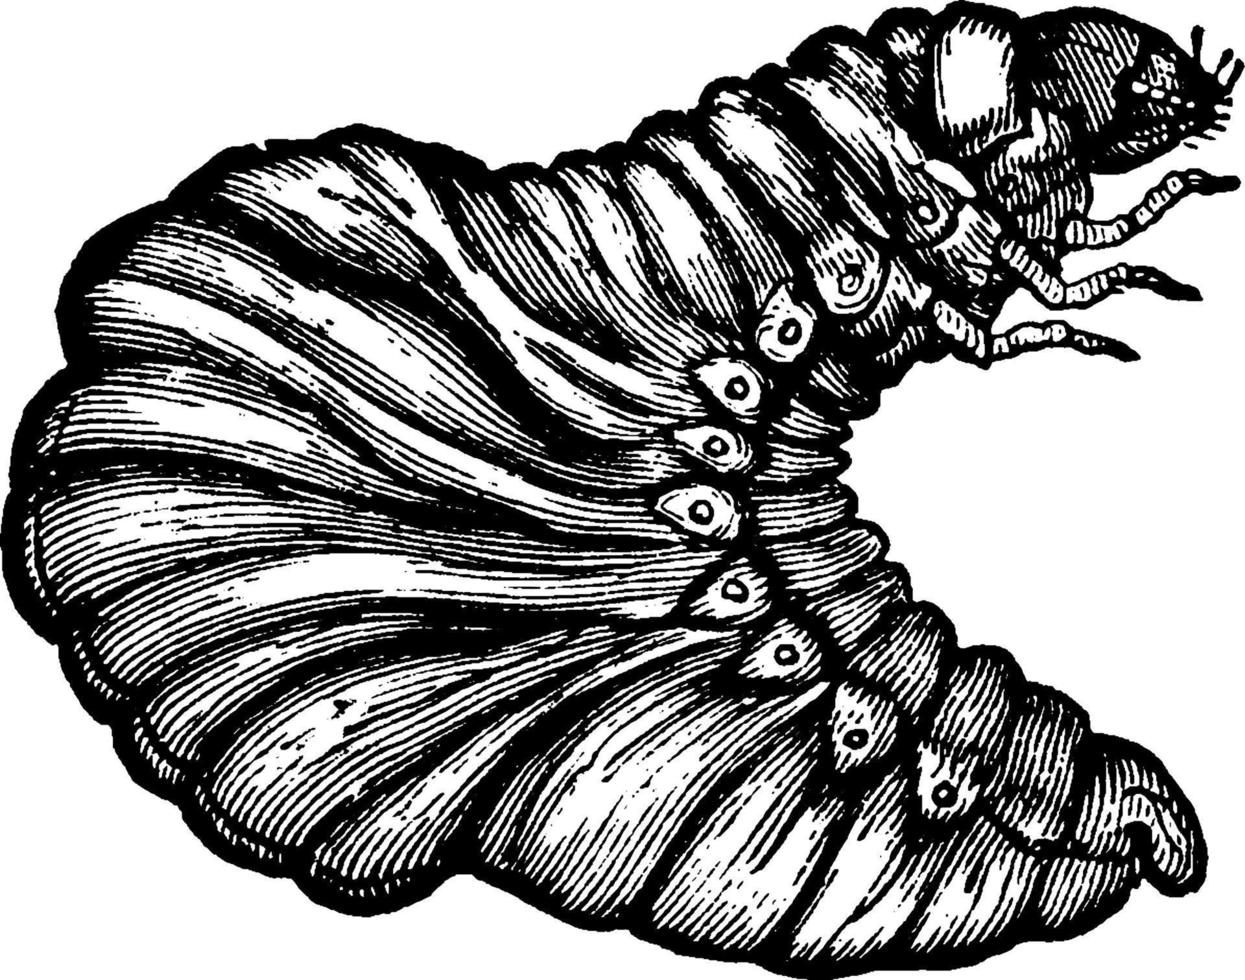 Tumblebug, vintage illustration. vector